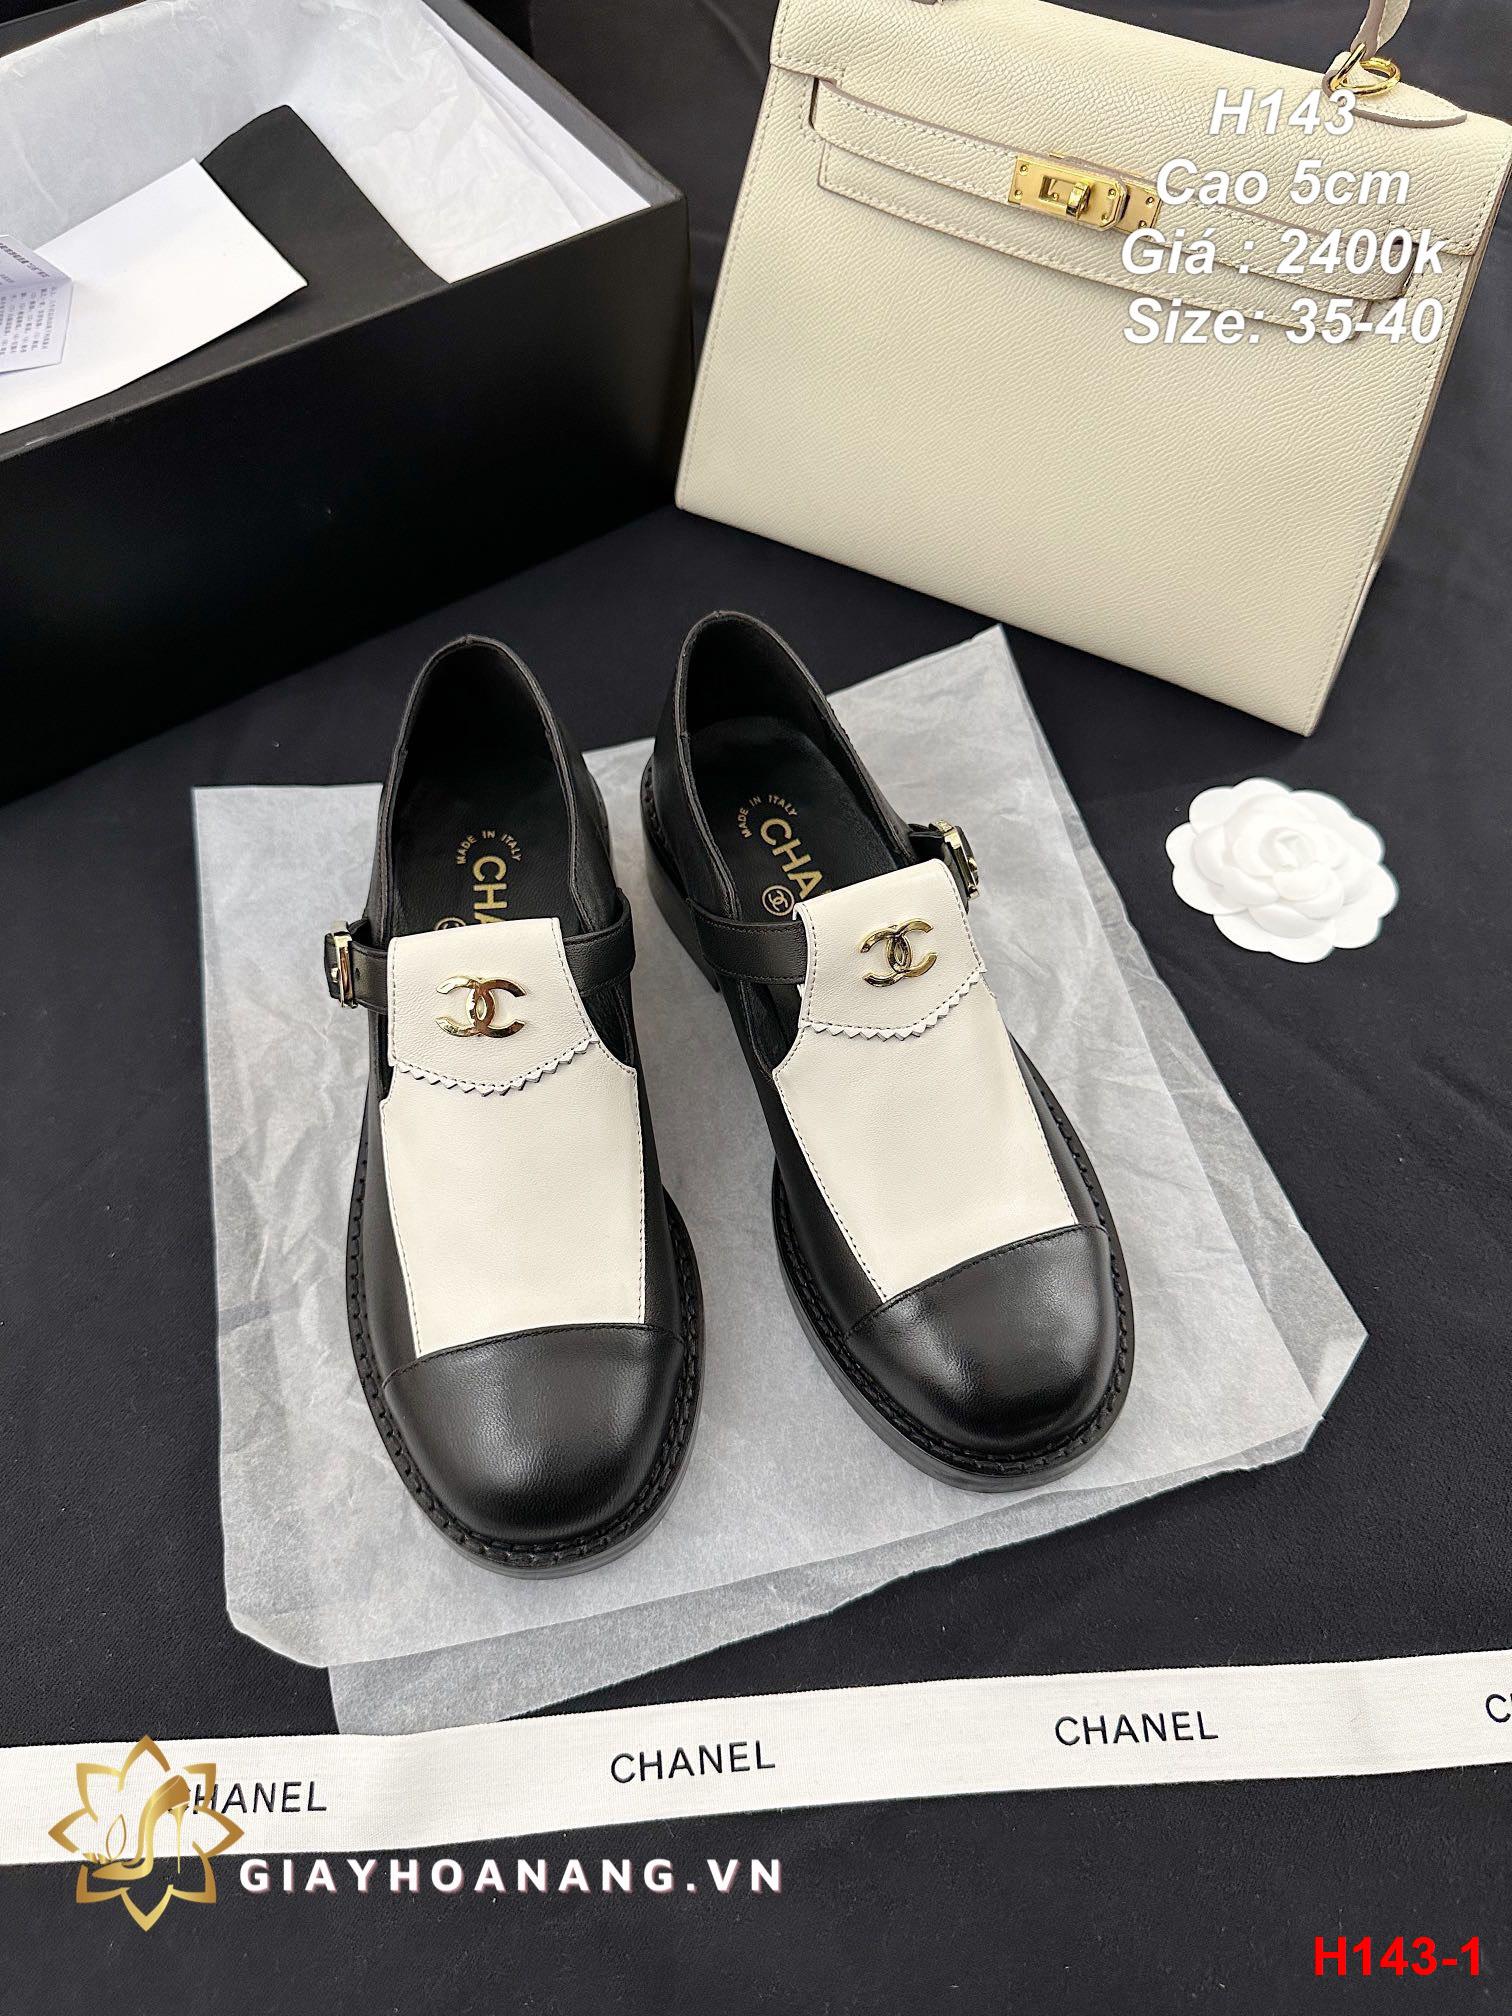 H143-1 Chanel giày cao 5cm siêu cấp